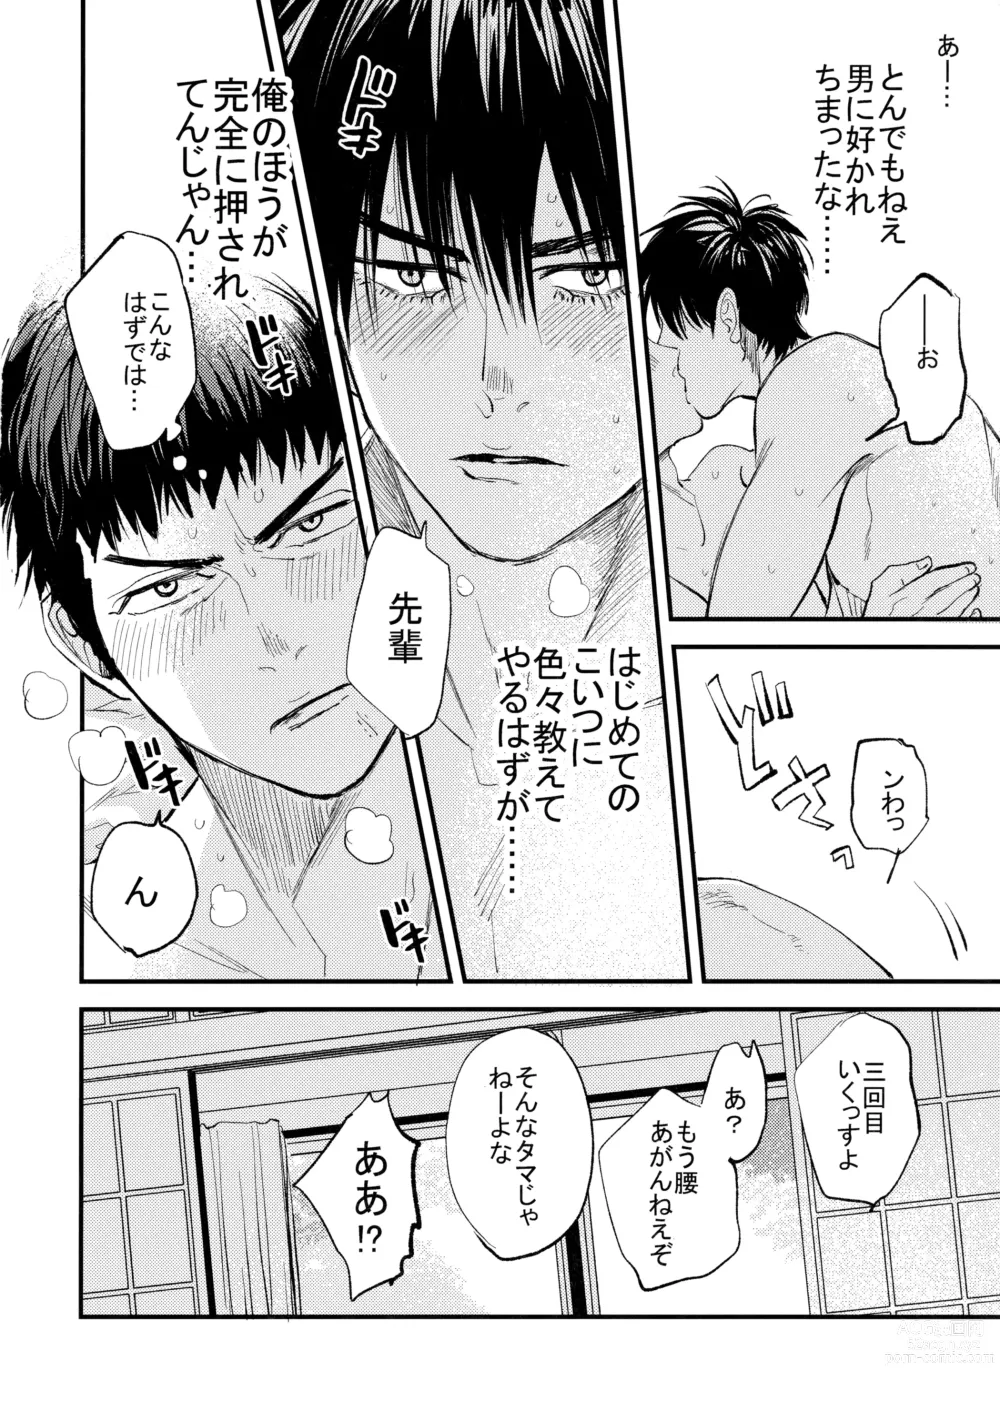 Page 55 of doujinshi Hajimete no,